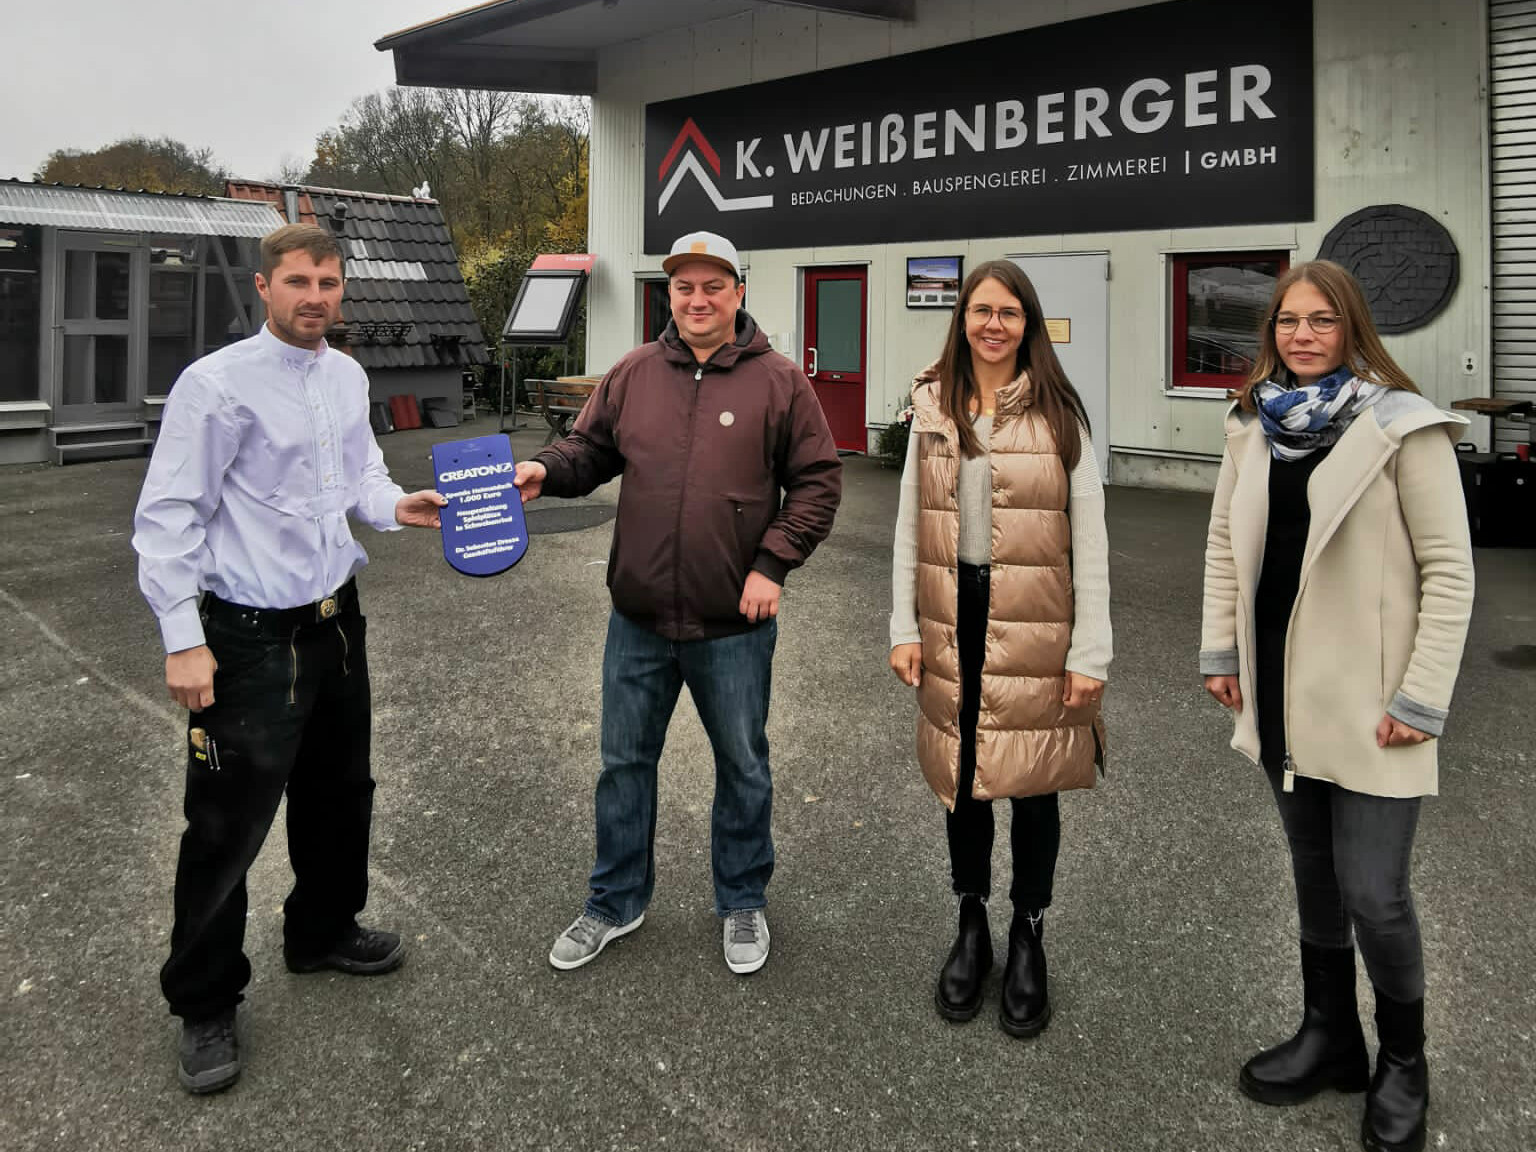 Manuel Weißenberger übergibt seine gewonnene Spende an die Elterninitiative von Schwebenried. (Foto: K. Weißenberger Bedachungen)